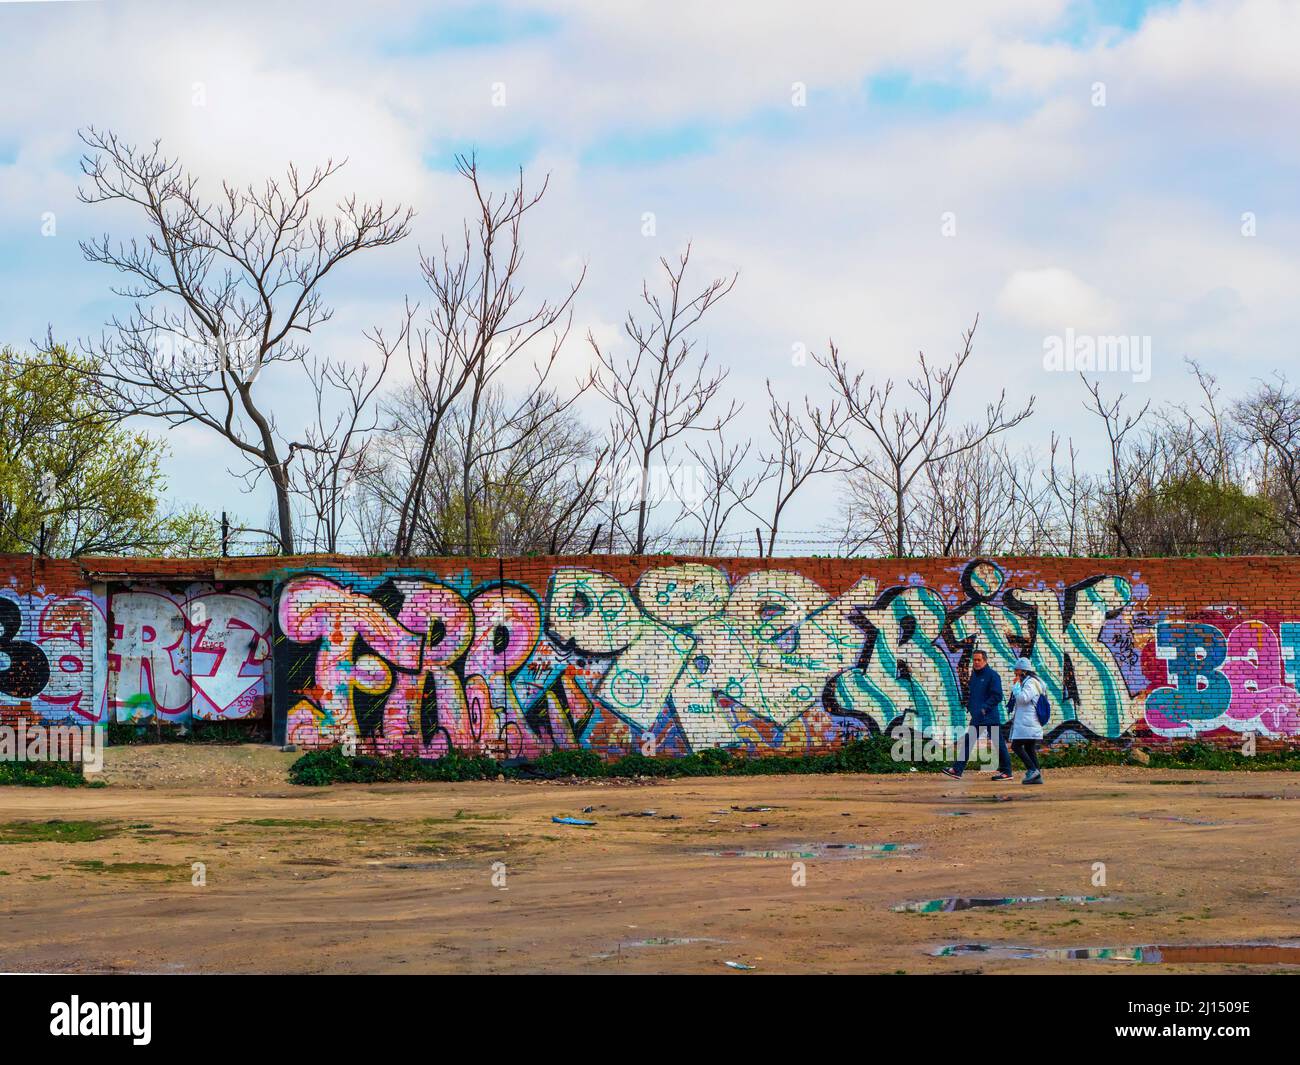 Un couple hétérosexuel marche à travers un champ ouvert devant un mur avec des graffitis. Banque D'Images